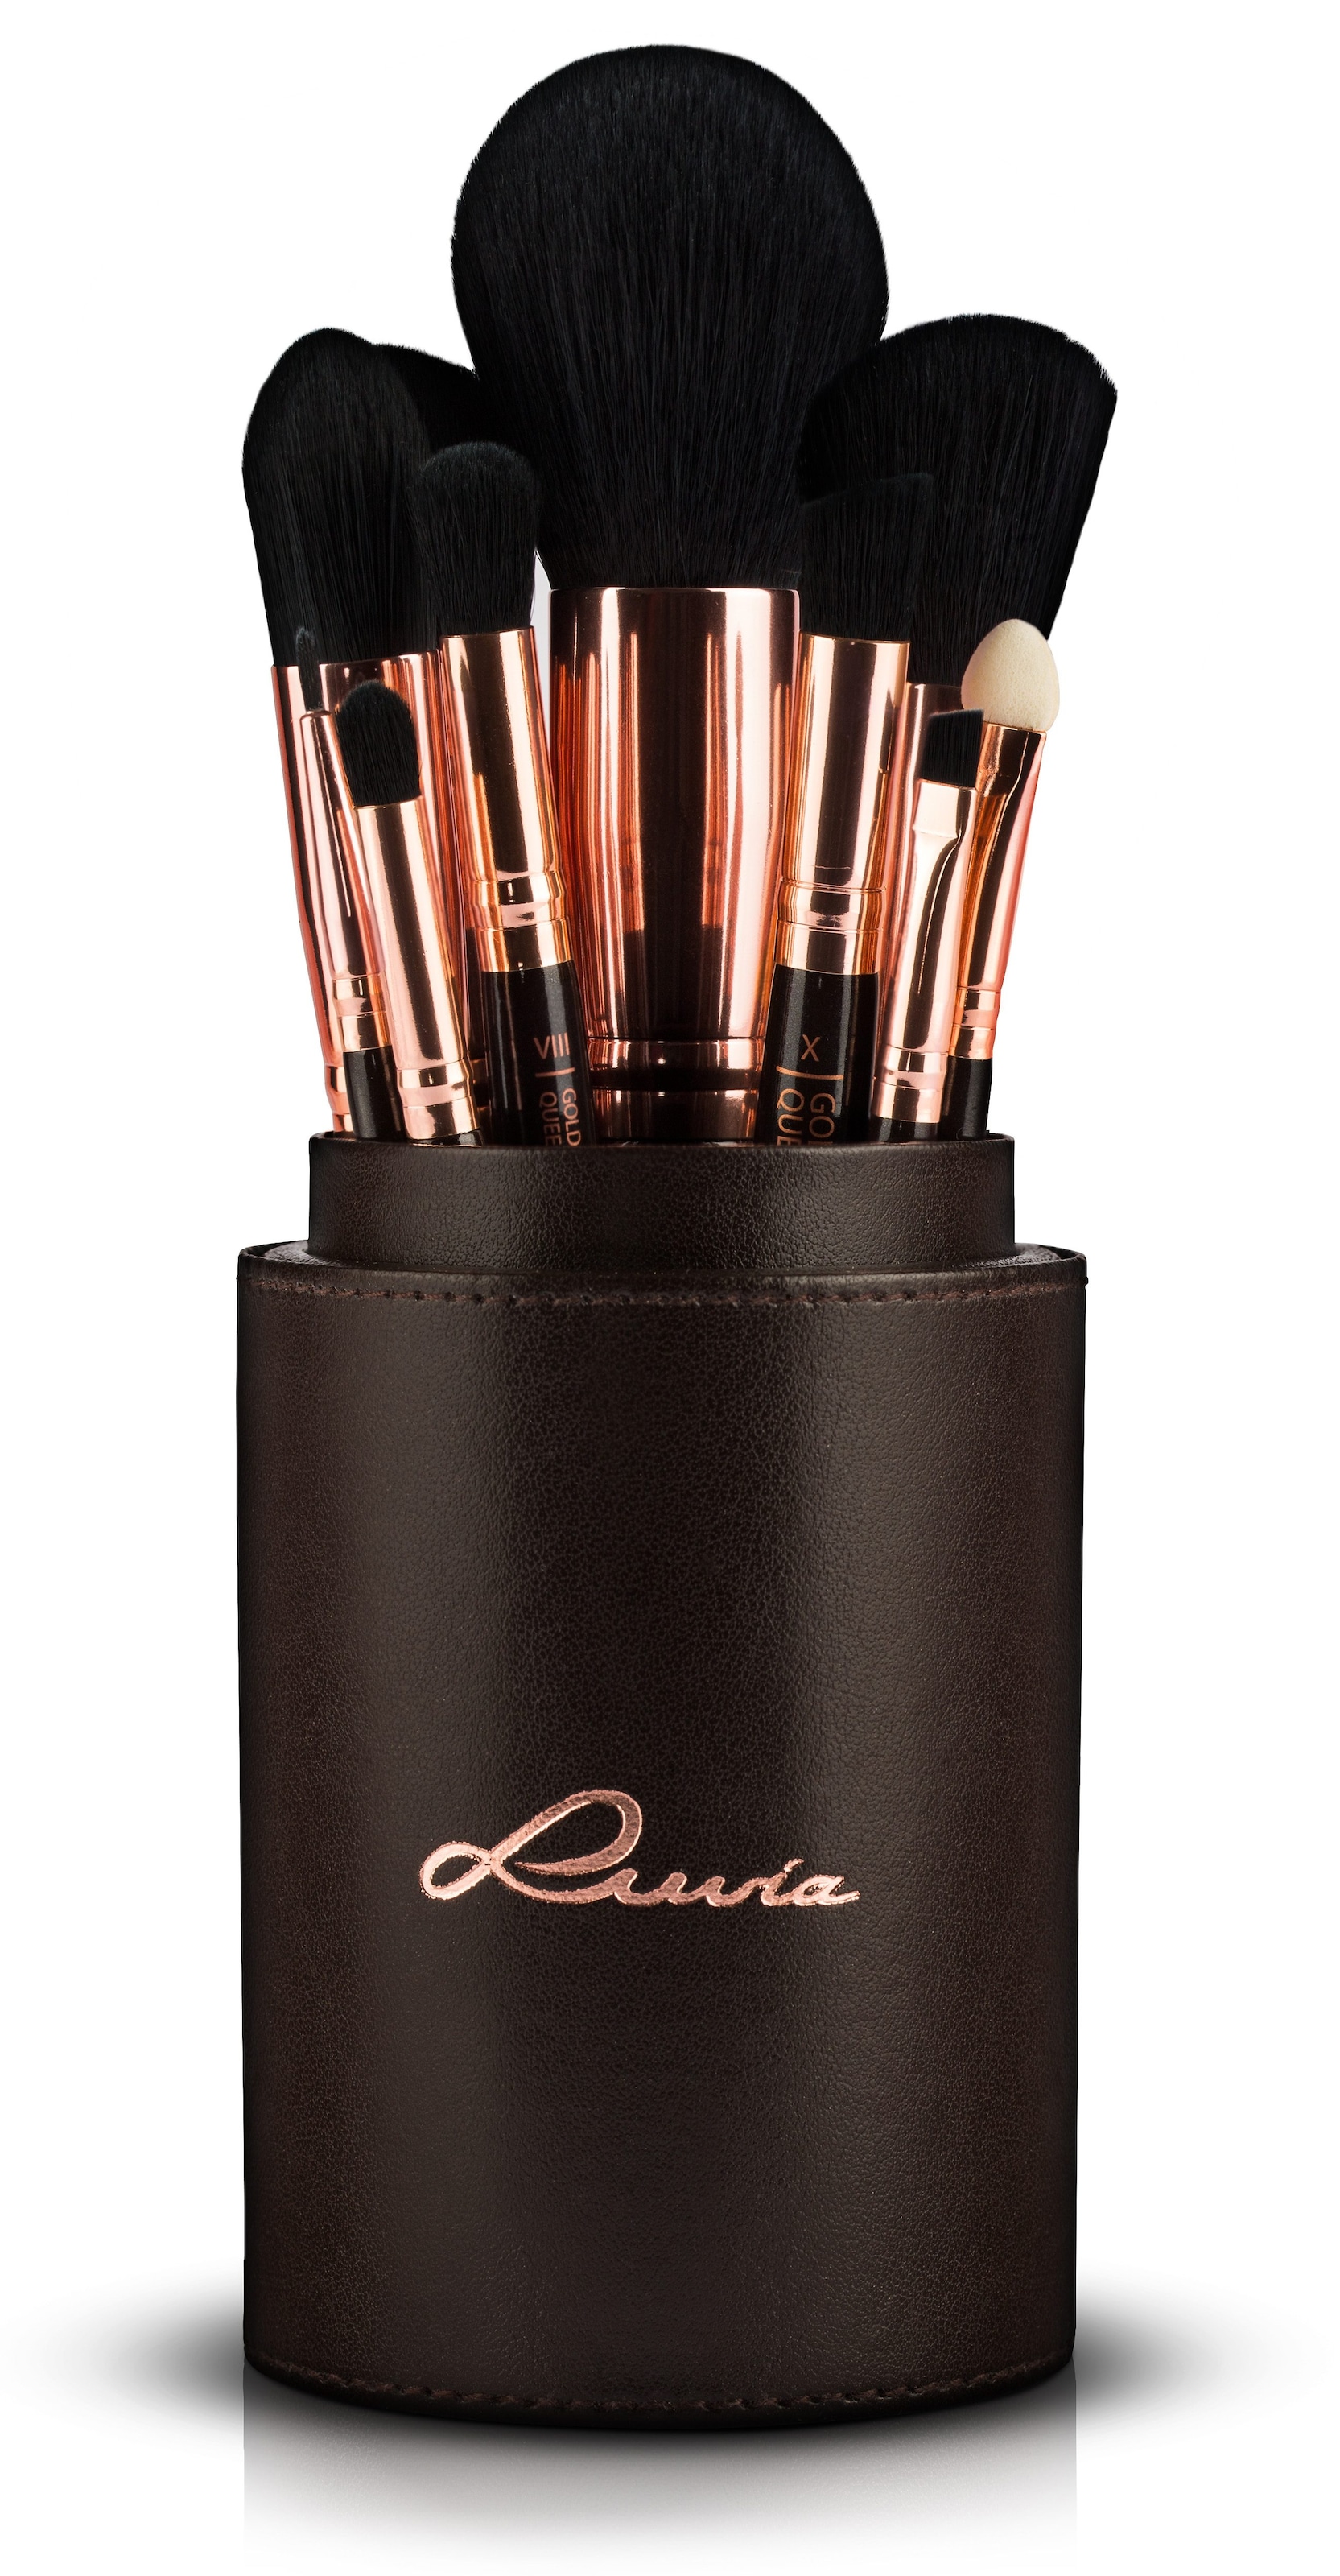 Luvia Cosmetics Kosmetikpinsel-Set »Golden Queen«, (15 tlg., mit  Pinselhalter), vegan online kaufen